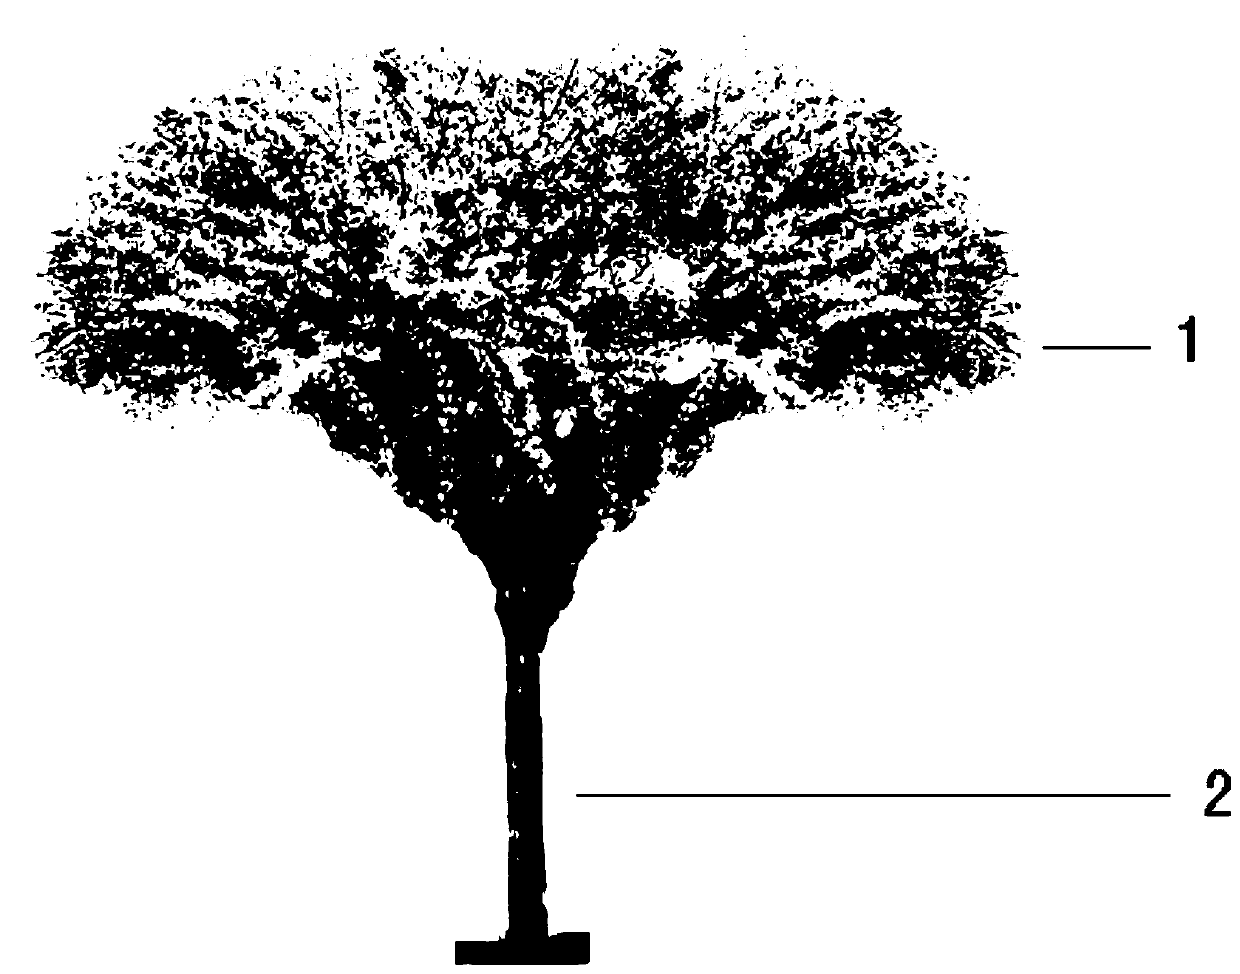 A kind of cultivation method of tree-like winter jasmine